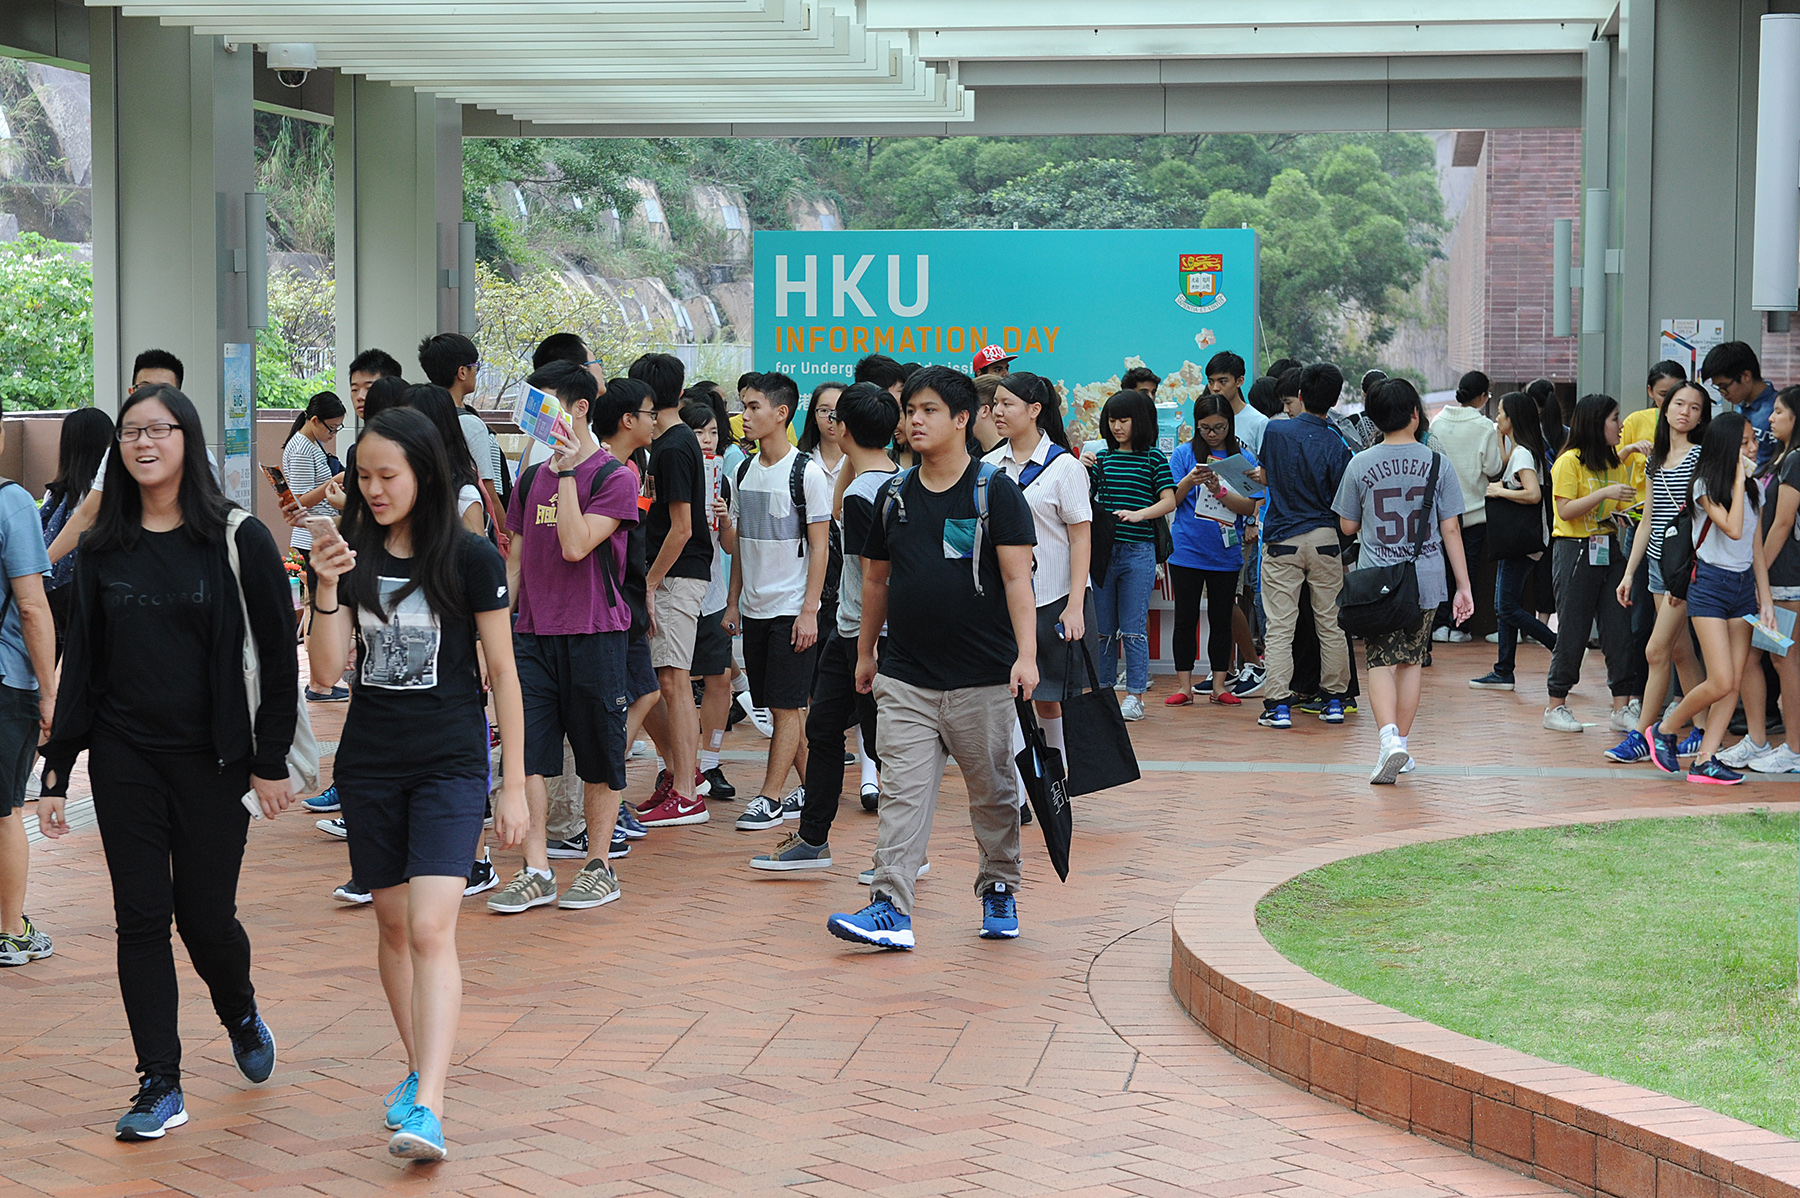 香港大學舉行本科入學資訊日2017 - 新聞稿- 傳媒- 香港大學